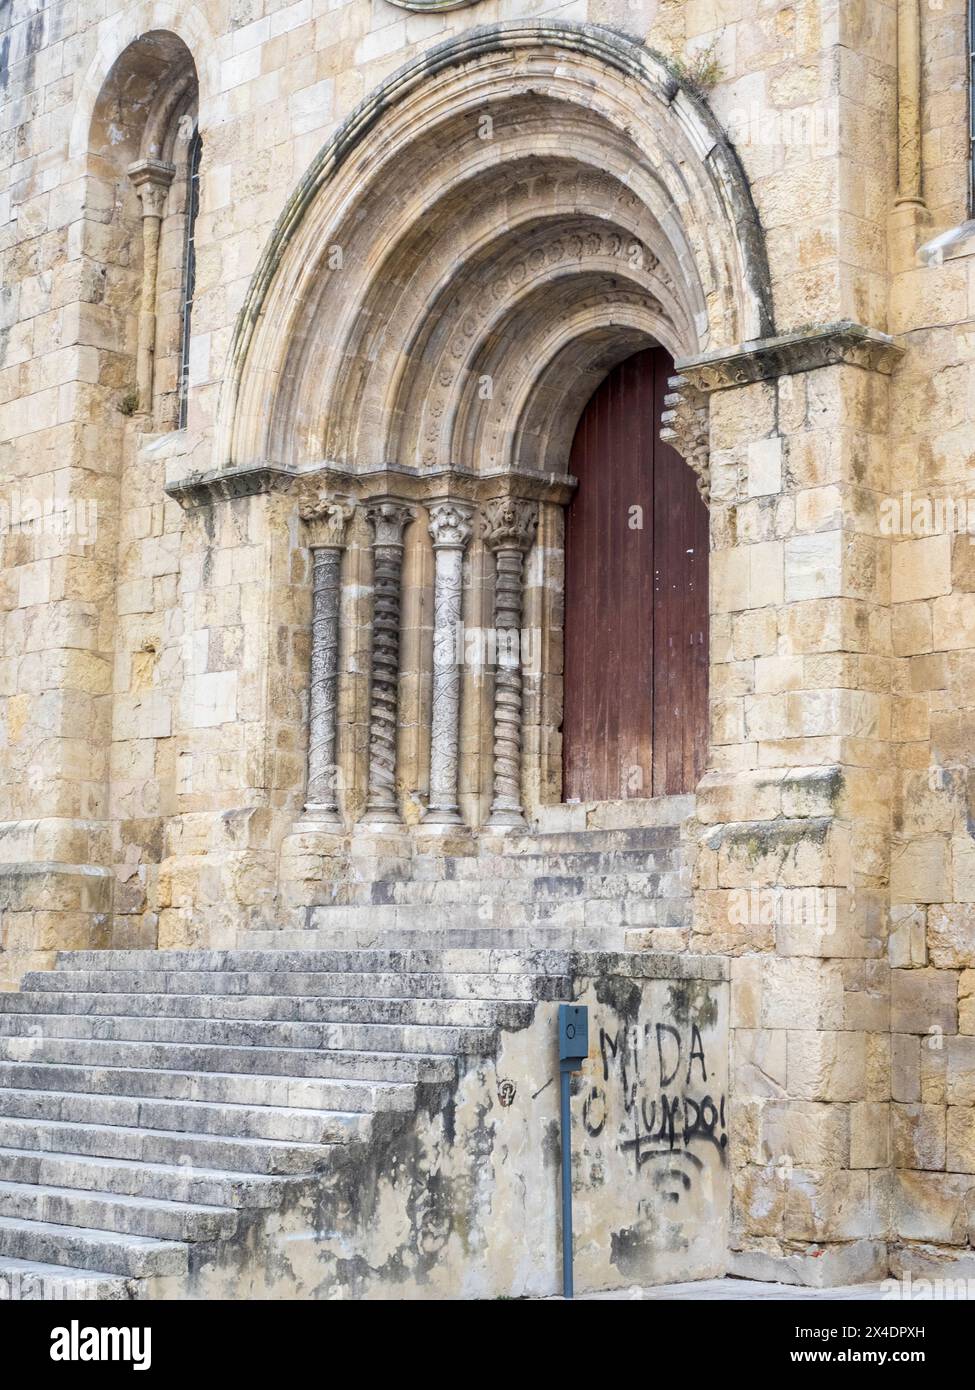 Entrance facade of Se Velha, Santa Maria de Coimbra, the old Cathedral of Coimbra. Stock Photo